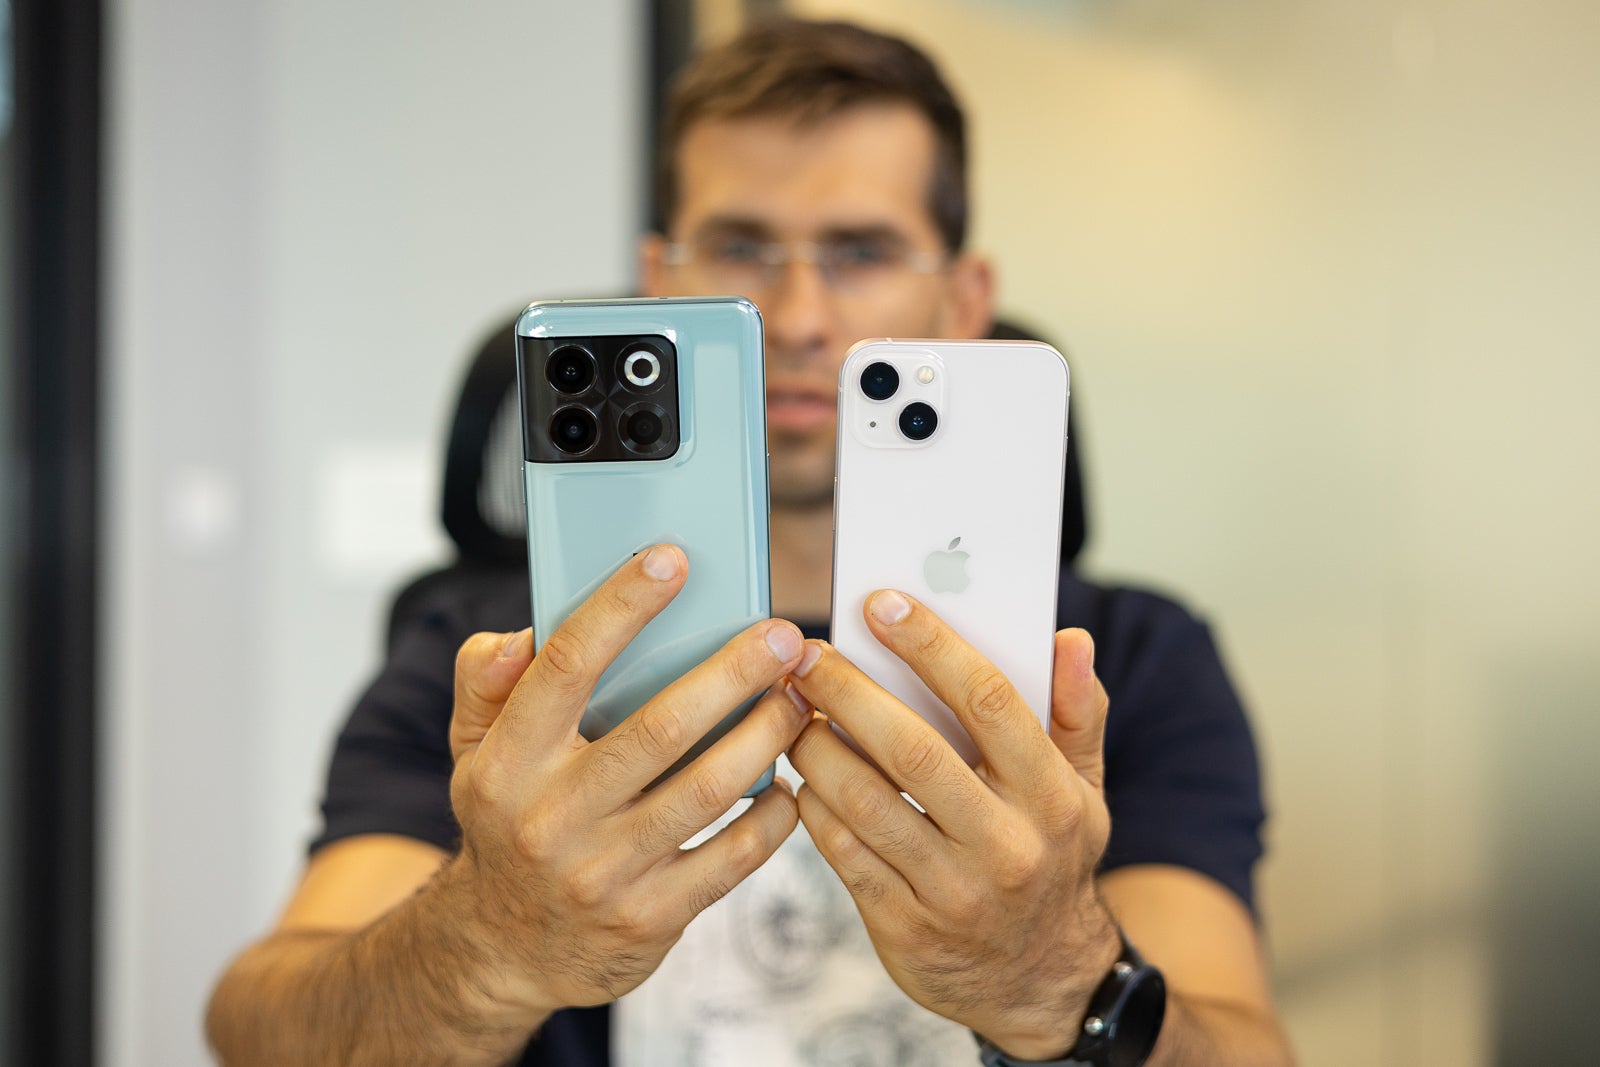 (Image credit - PhoneArena) OnePlus 10T terug (links) vs iPhone 13 (rechts) - OnePlus 10T vs iPhone 13 vergelijking: enorme oplaadverschillen